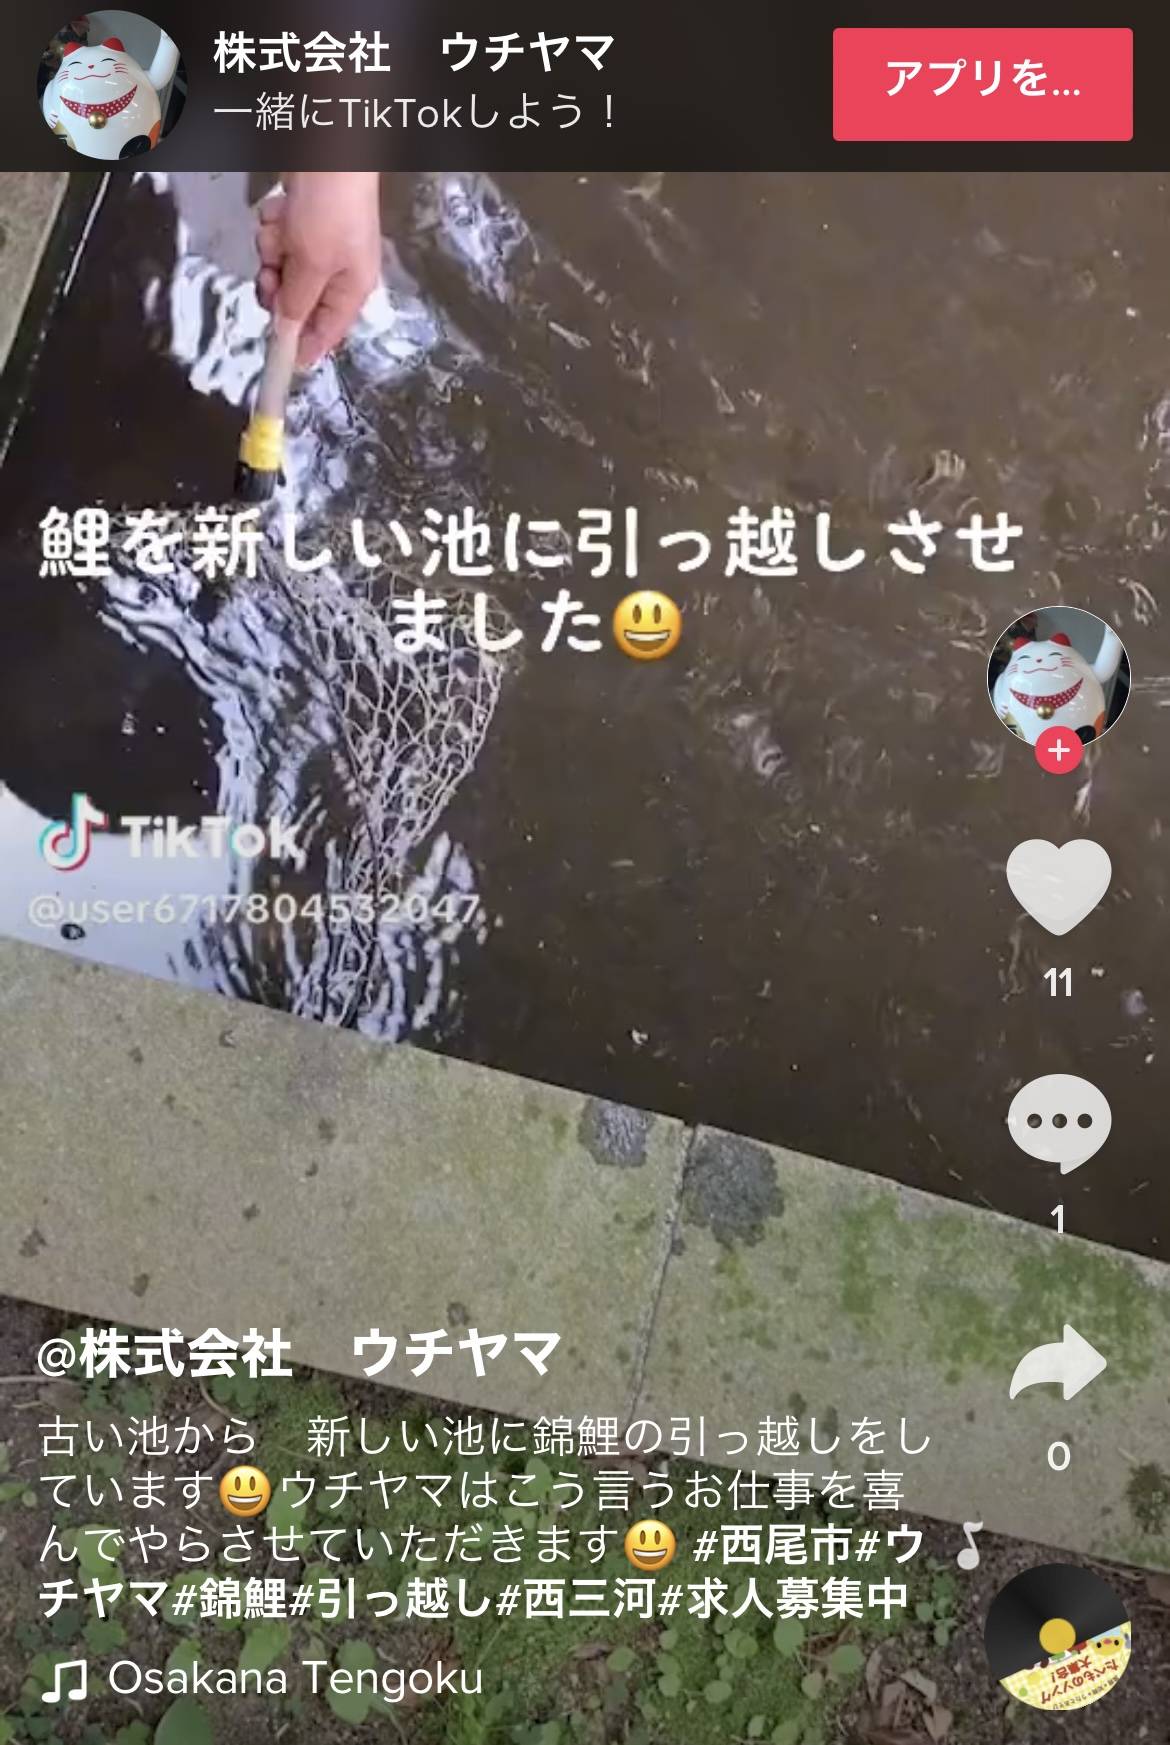 鯉の捕獲 ウチヤマのブログ 写真4